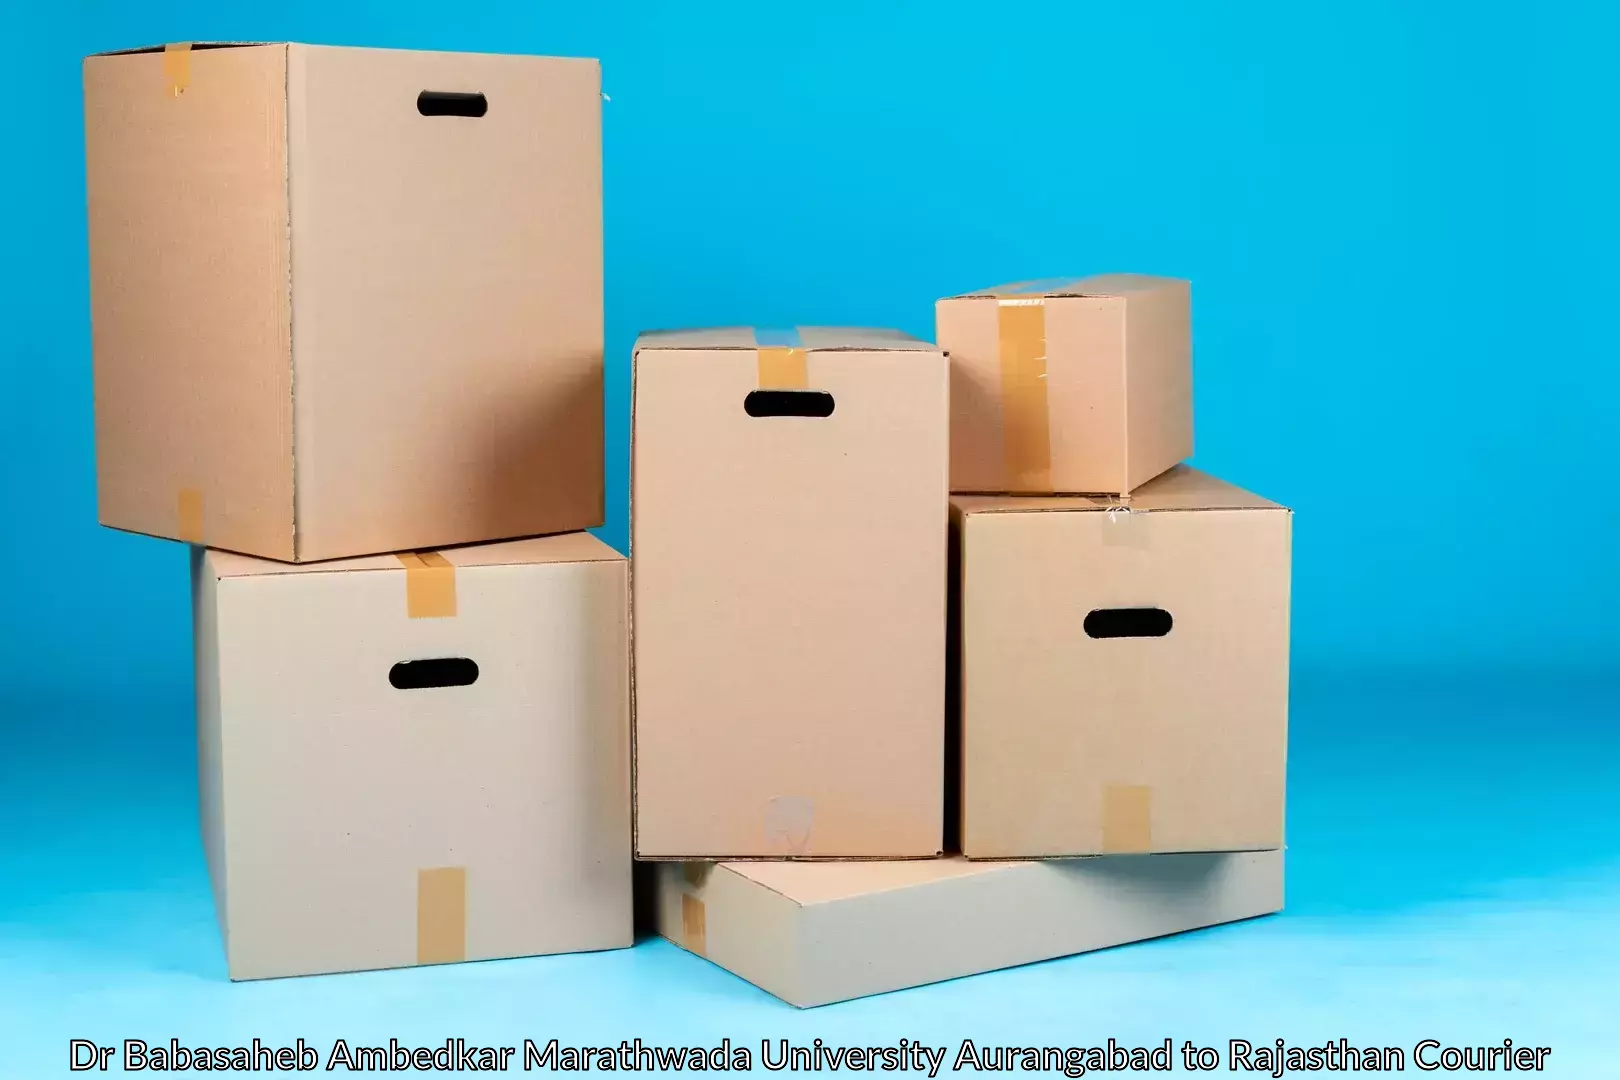 Home moving specialists Dr Babasaheb Ambedkar Marathwada University Aurangabad to Ajmer